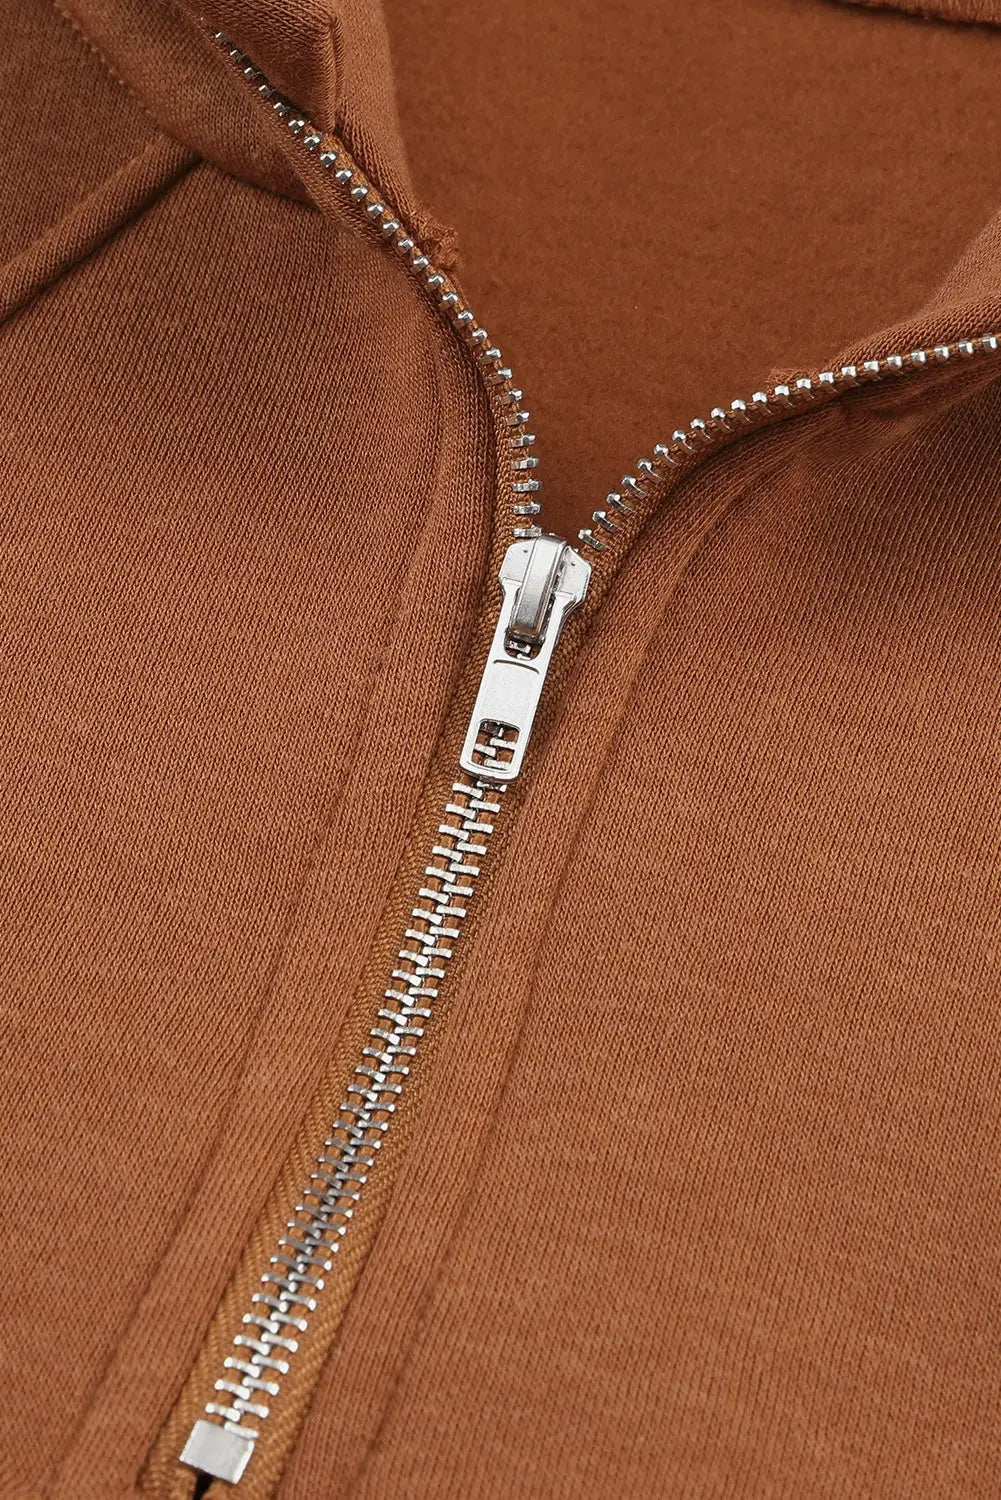 Brown quarter zip kangaroo pocket hoodie - sweatshirts & hoodies